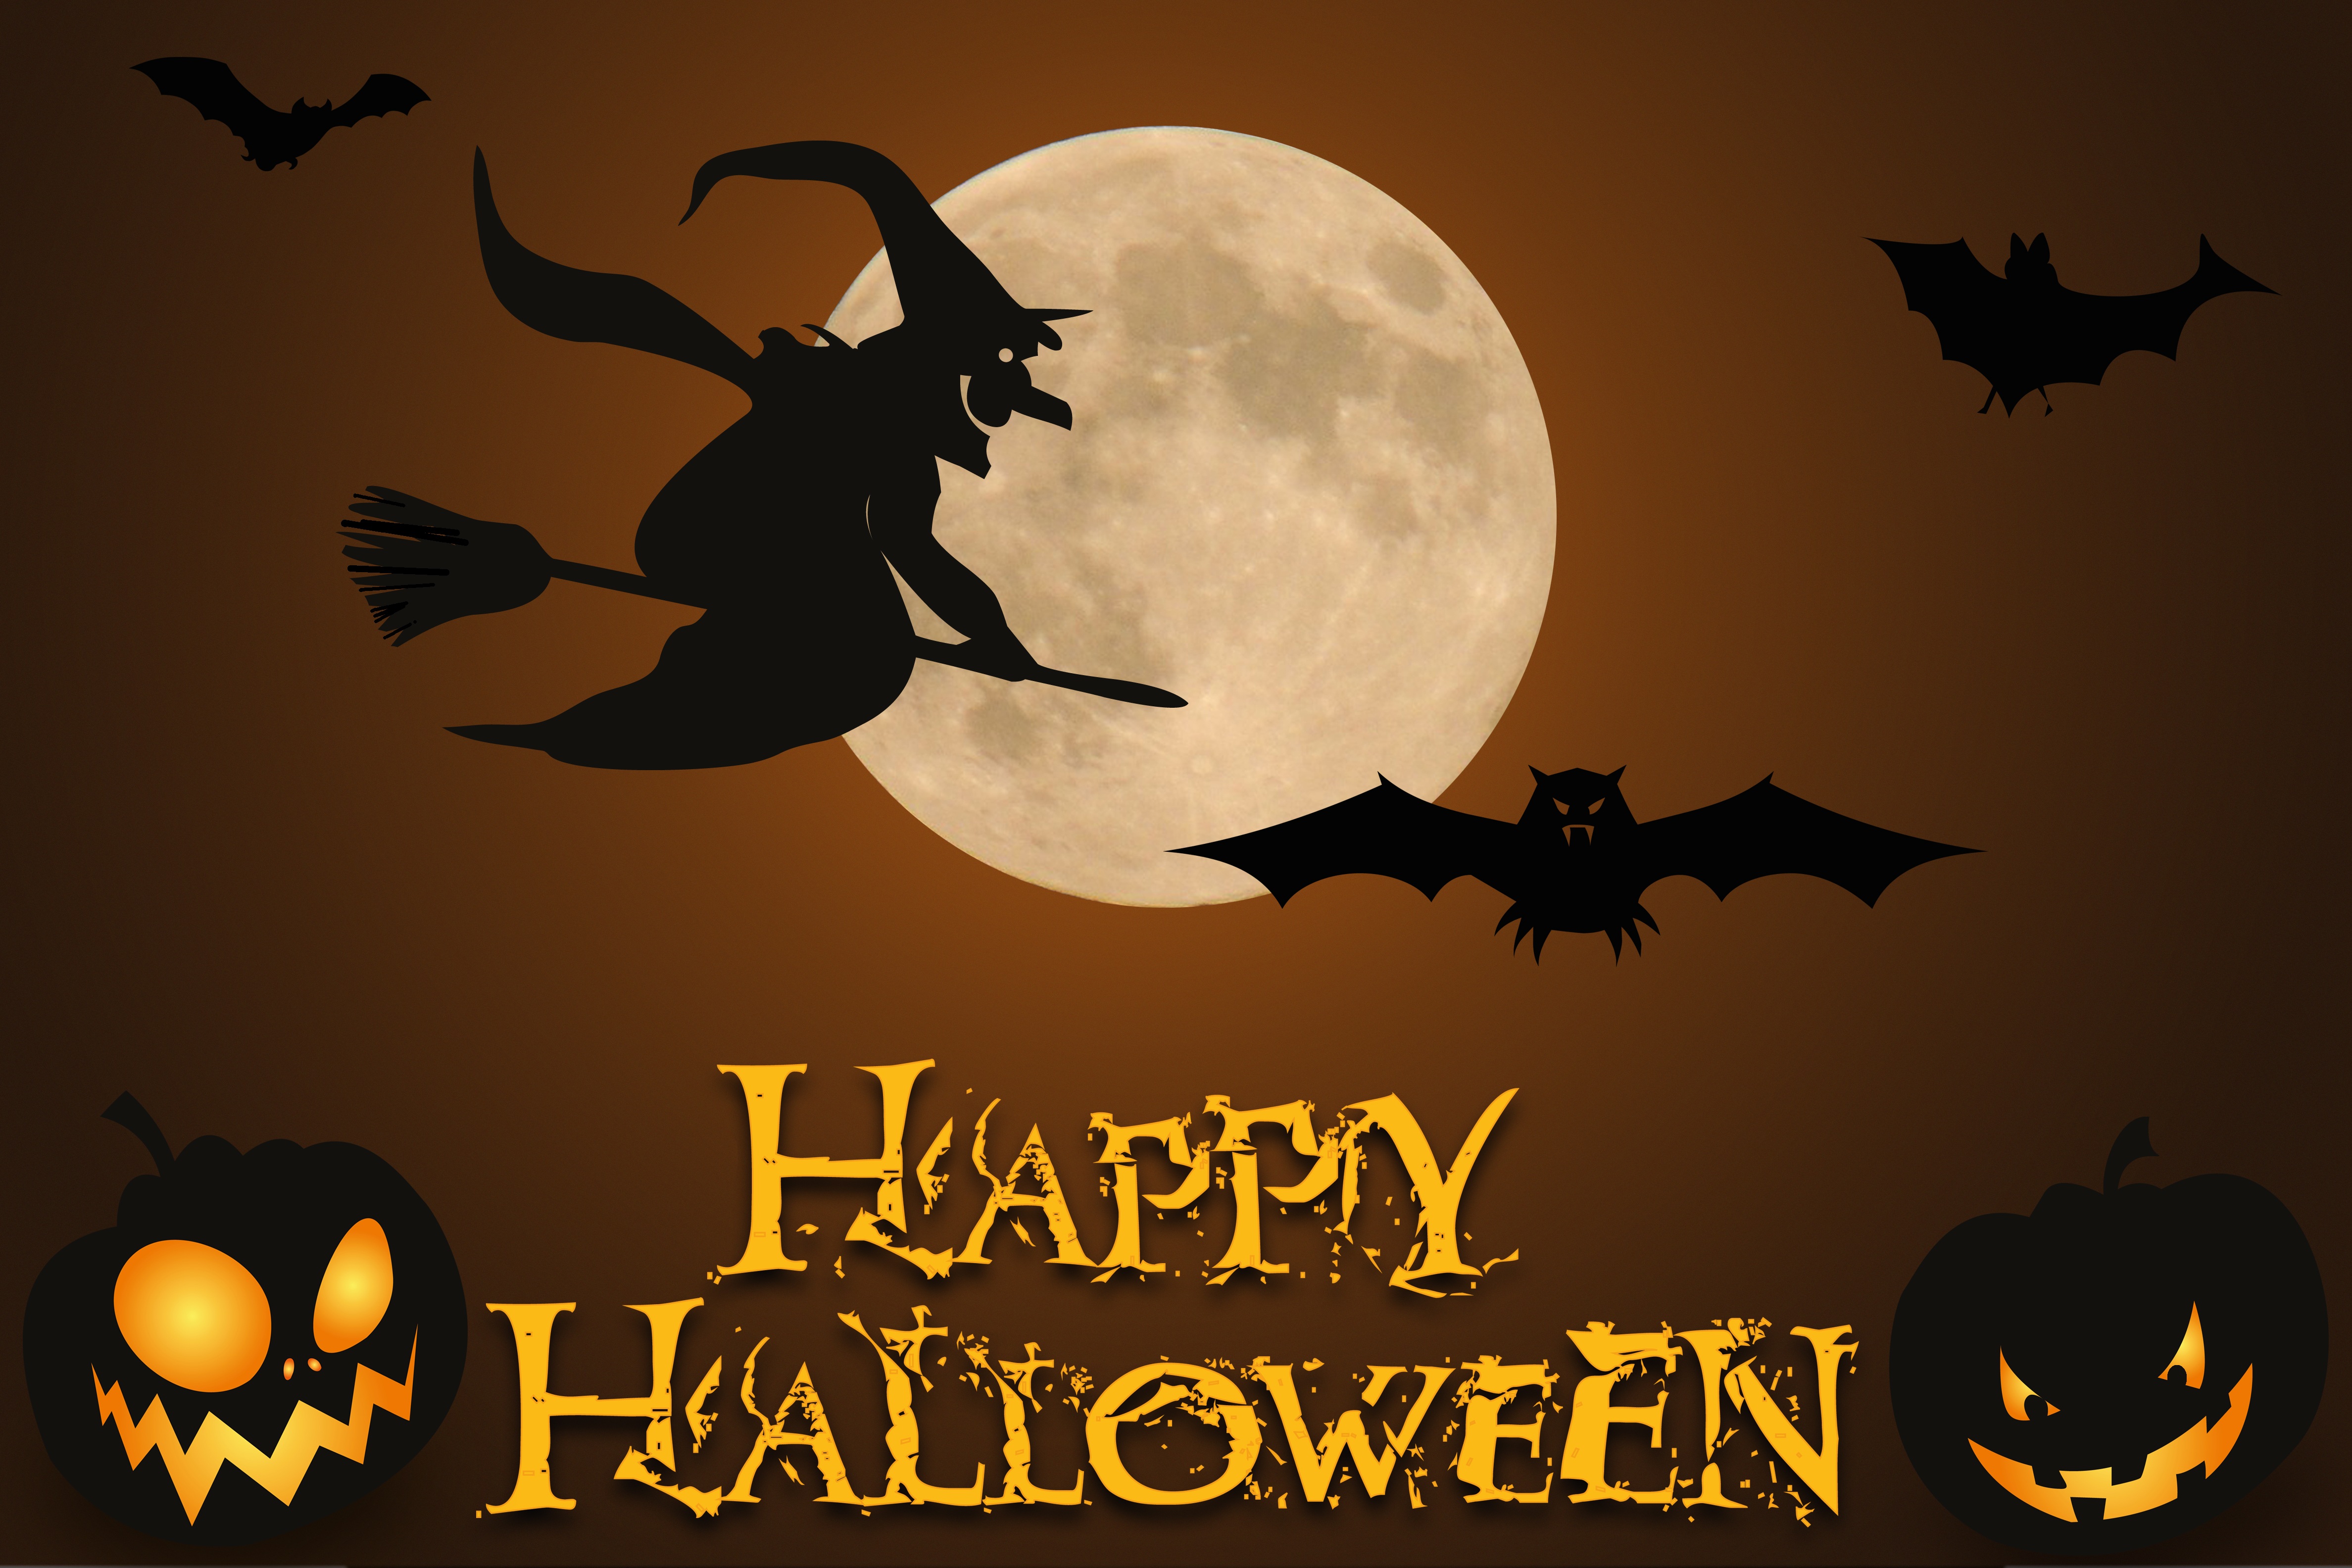 holiday, halloween, bat, happy halloween, jack o' lantern, moon, witch FHD, 4K, UHD